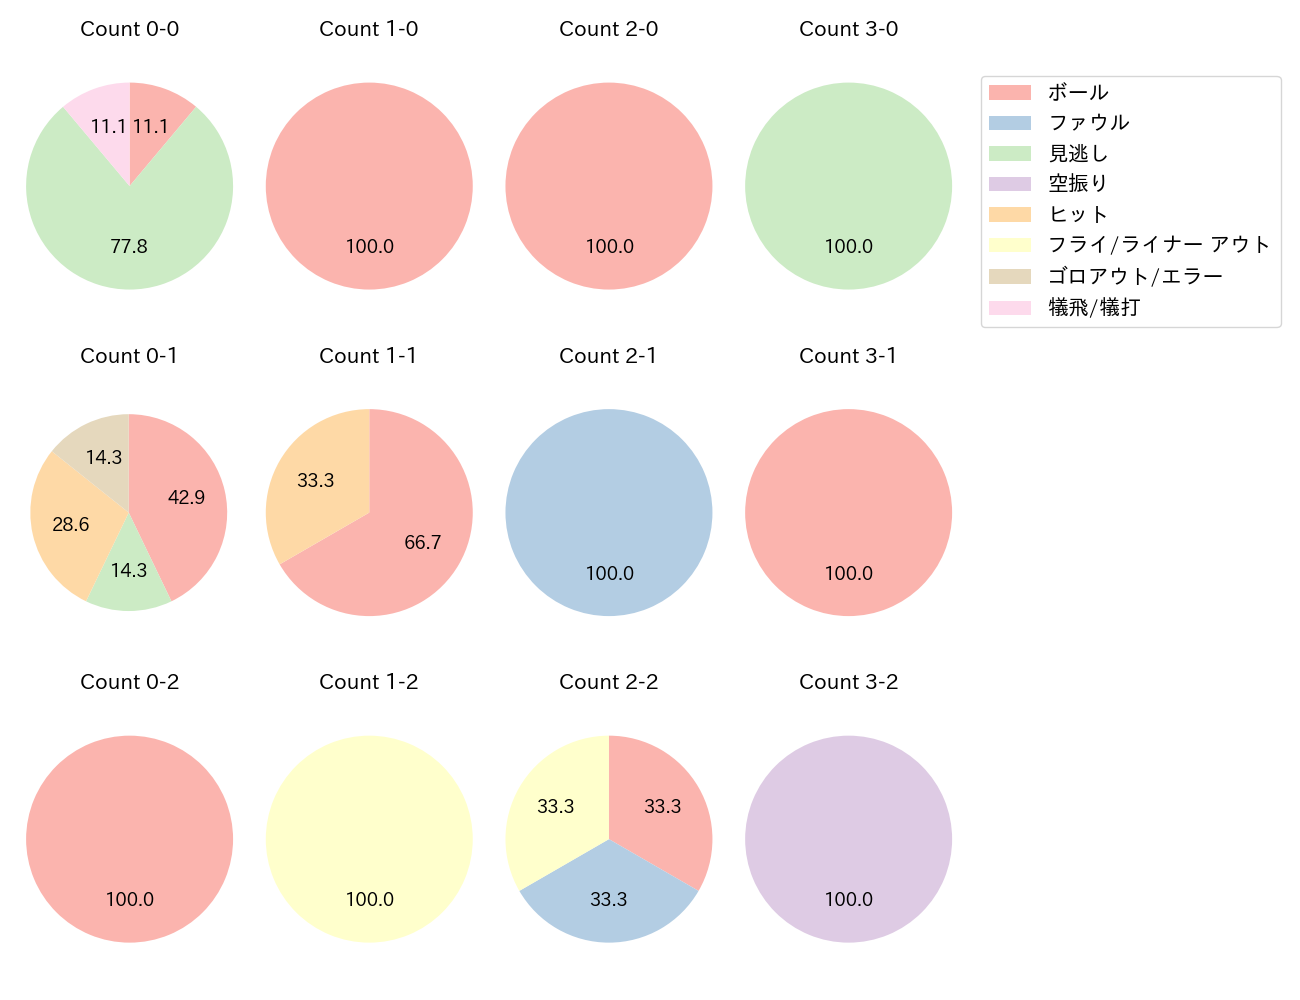 川瀬 晃の球数分布(2022年5月)